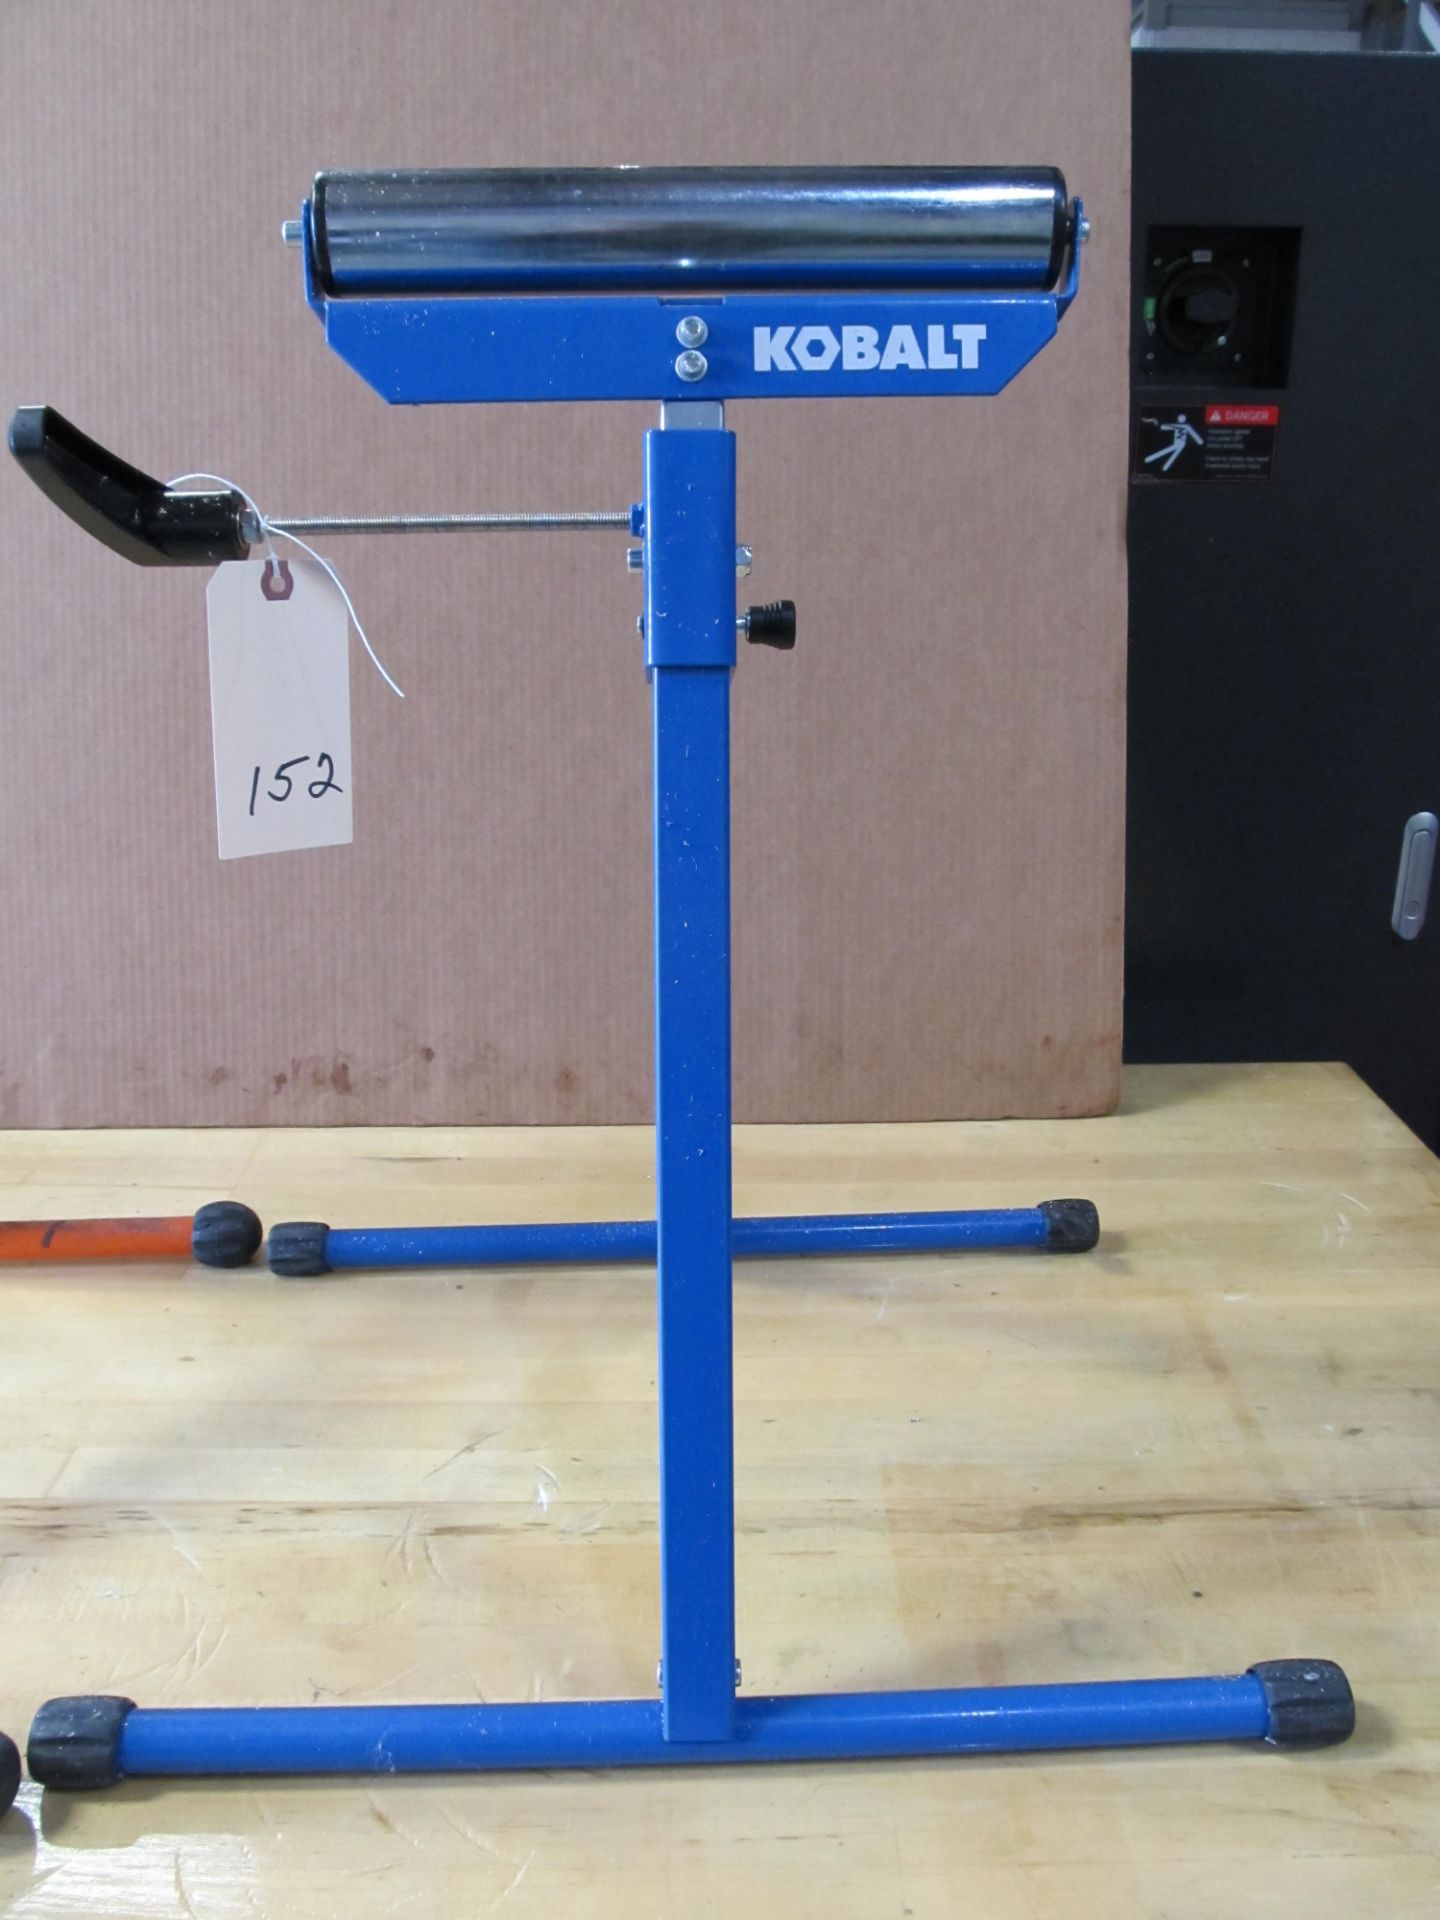 Lot - Portamate & Kobalt Roller Stands - Image 2 of 4